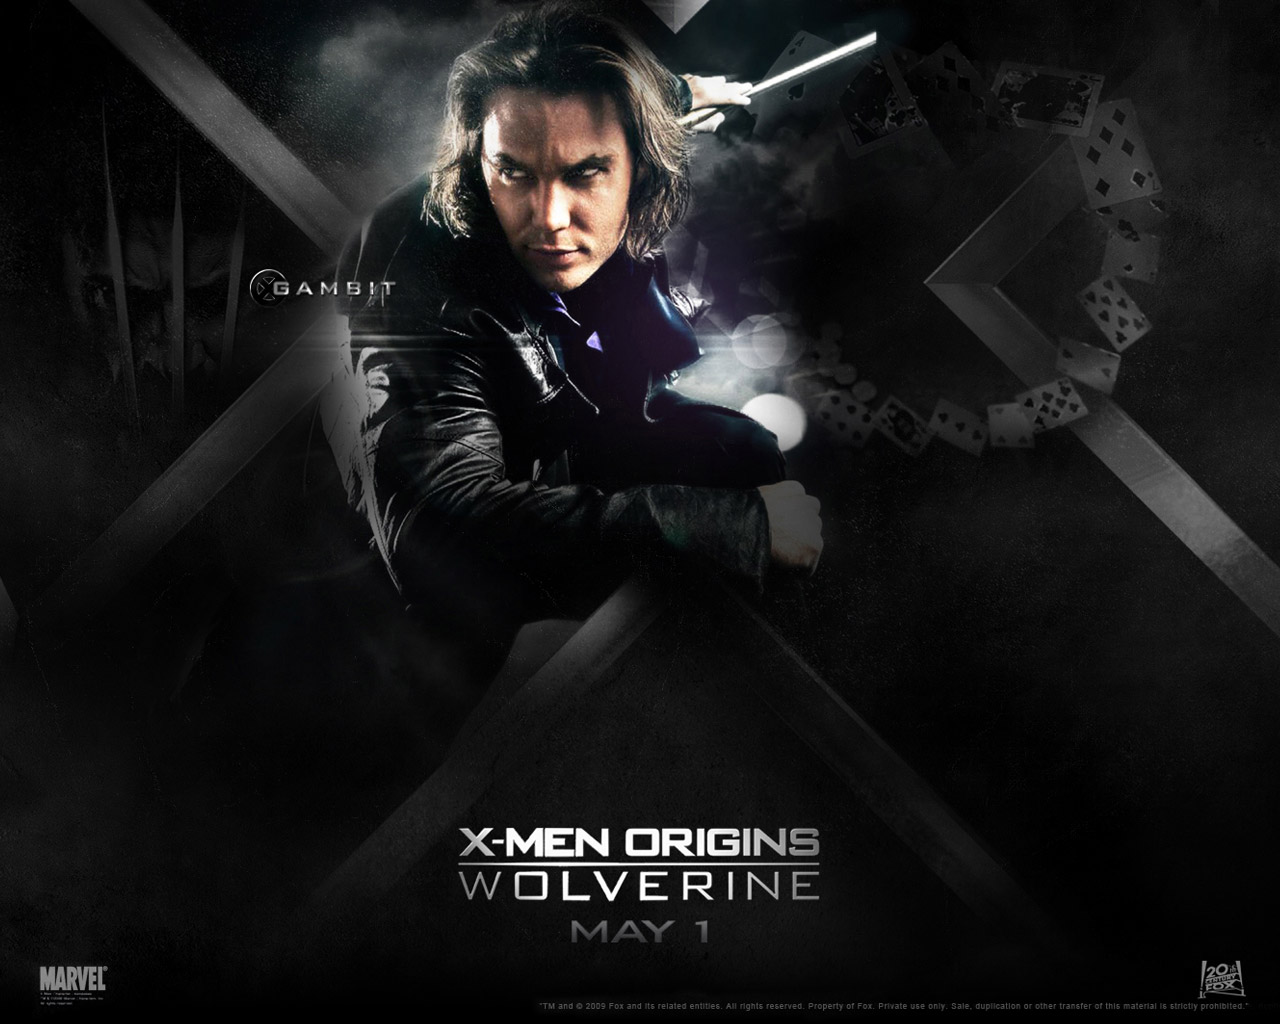 壁纸1280x1024金刚狼 X Men Origins Wolverine 电影壁纸 Wolverine X战警前传 金刚狼图片壁纸壁纸 《金刚狼 X-Men OriginsWolverine 》电影壁纸壁纸 《金刚狼 X-Men OriginsWolverine 》电影壁纸图片 《金刚狼 X-Men OriginsWolverine 》电影壁纸素材 影视壁纸 影视图库 影视图片素材桌面壁纸